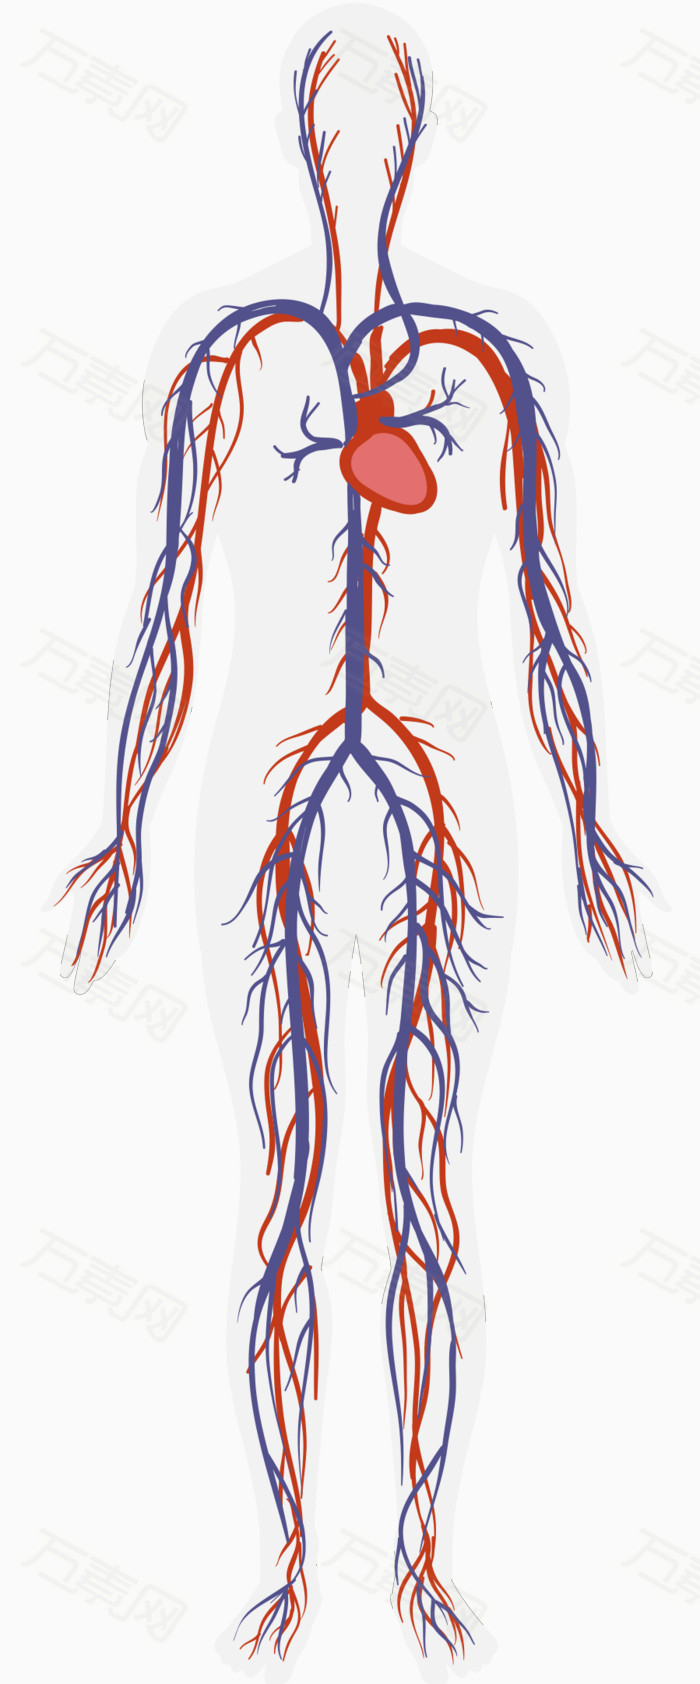 人体血液循环系统